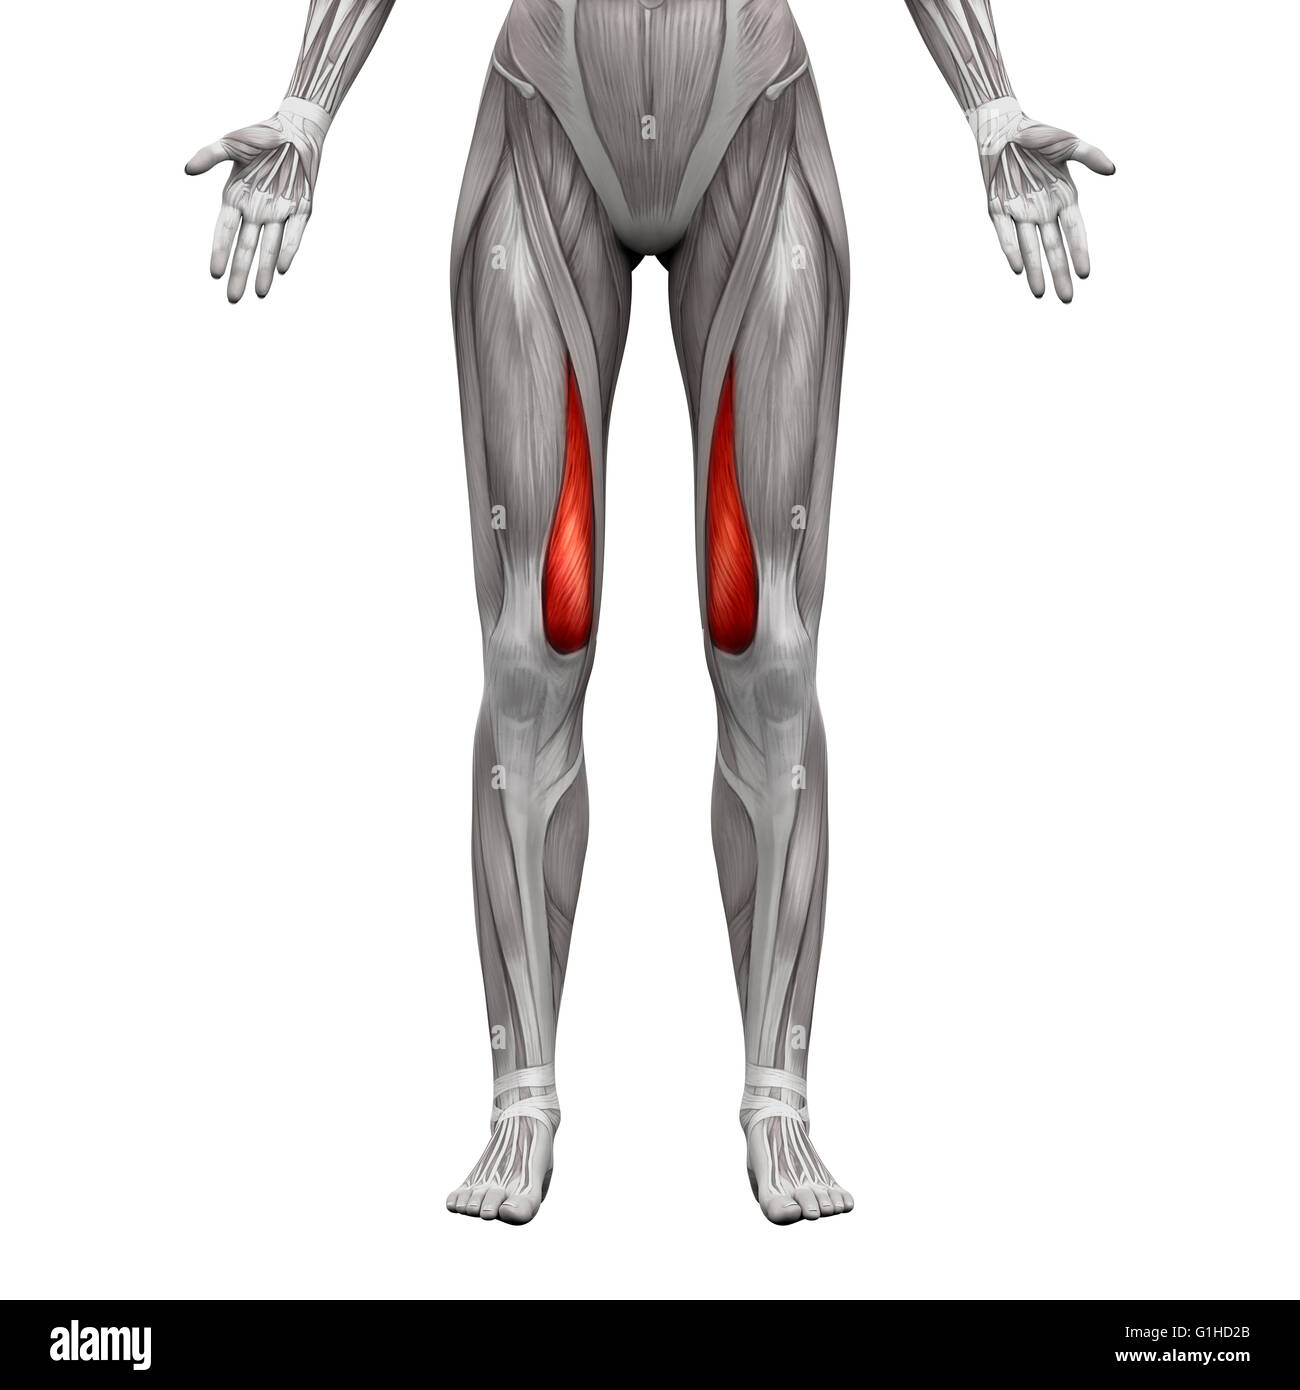 Vastus Medialis Muskel - isoliert Anatomie Muskeln auf weiss - 3D-Illustration Stockfoto